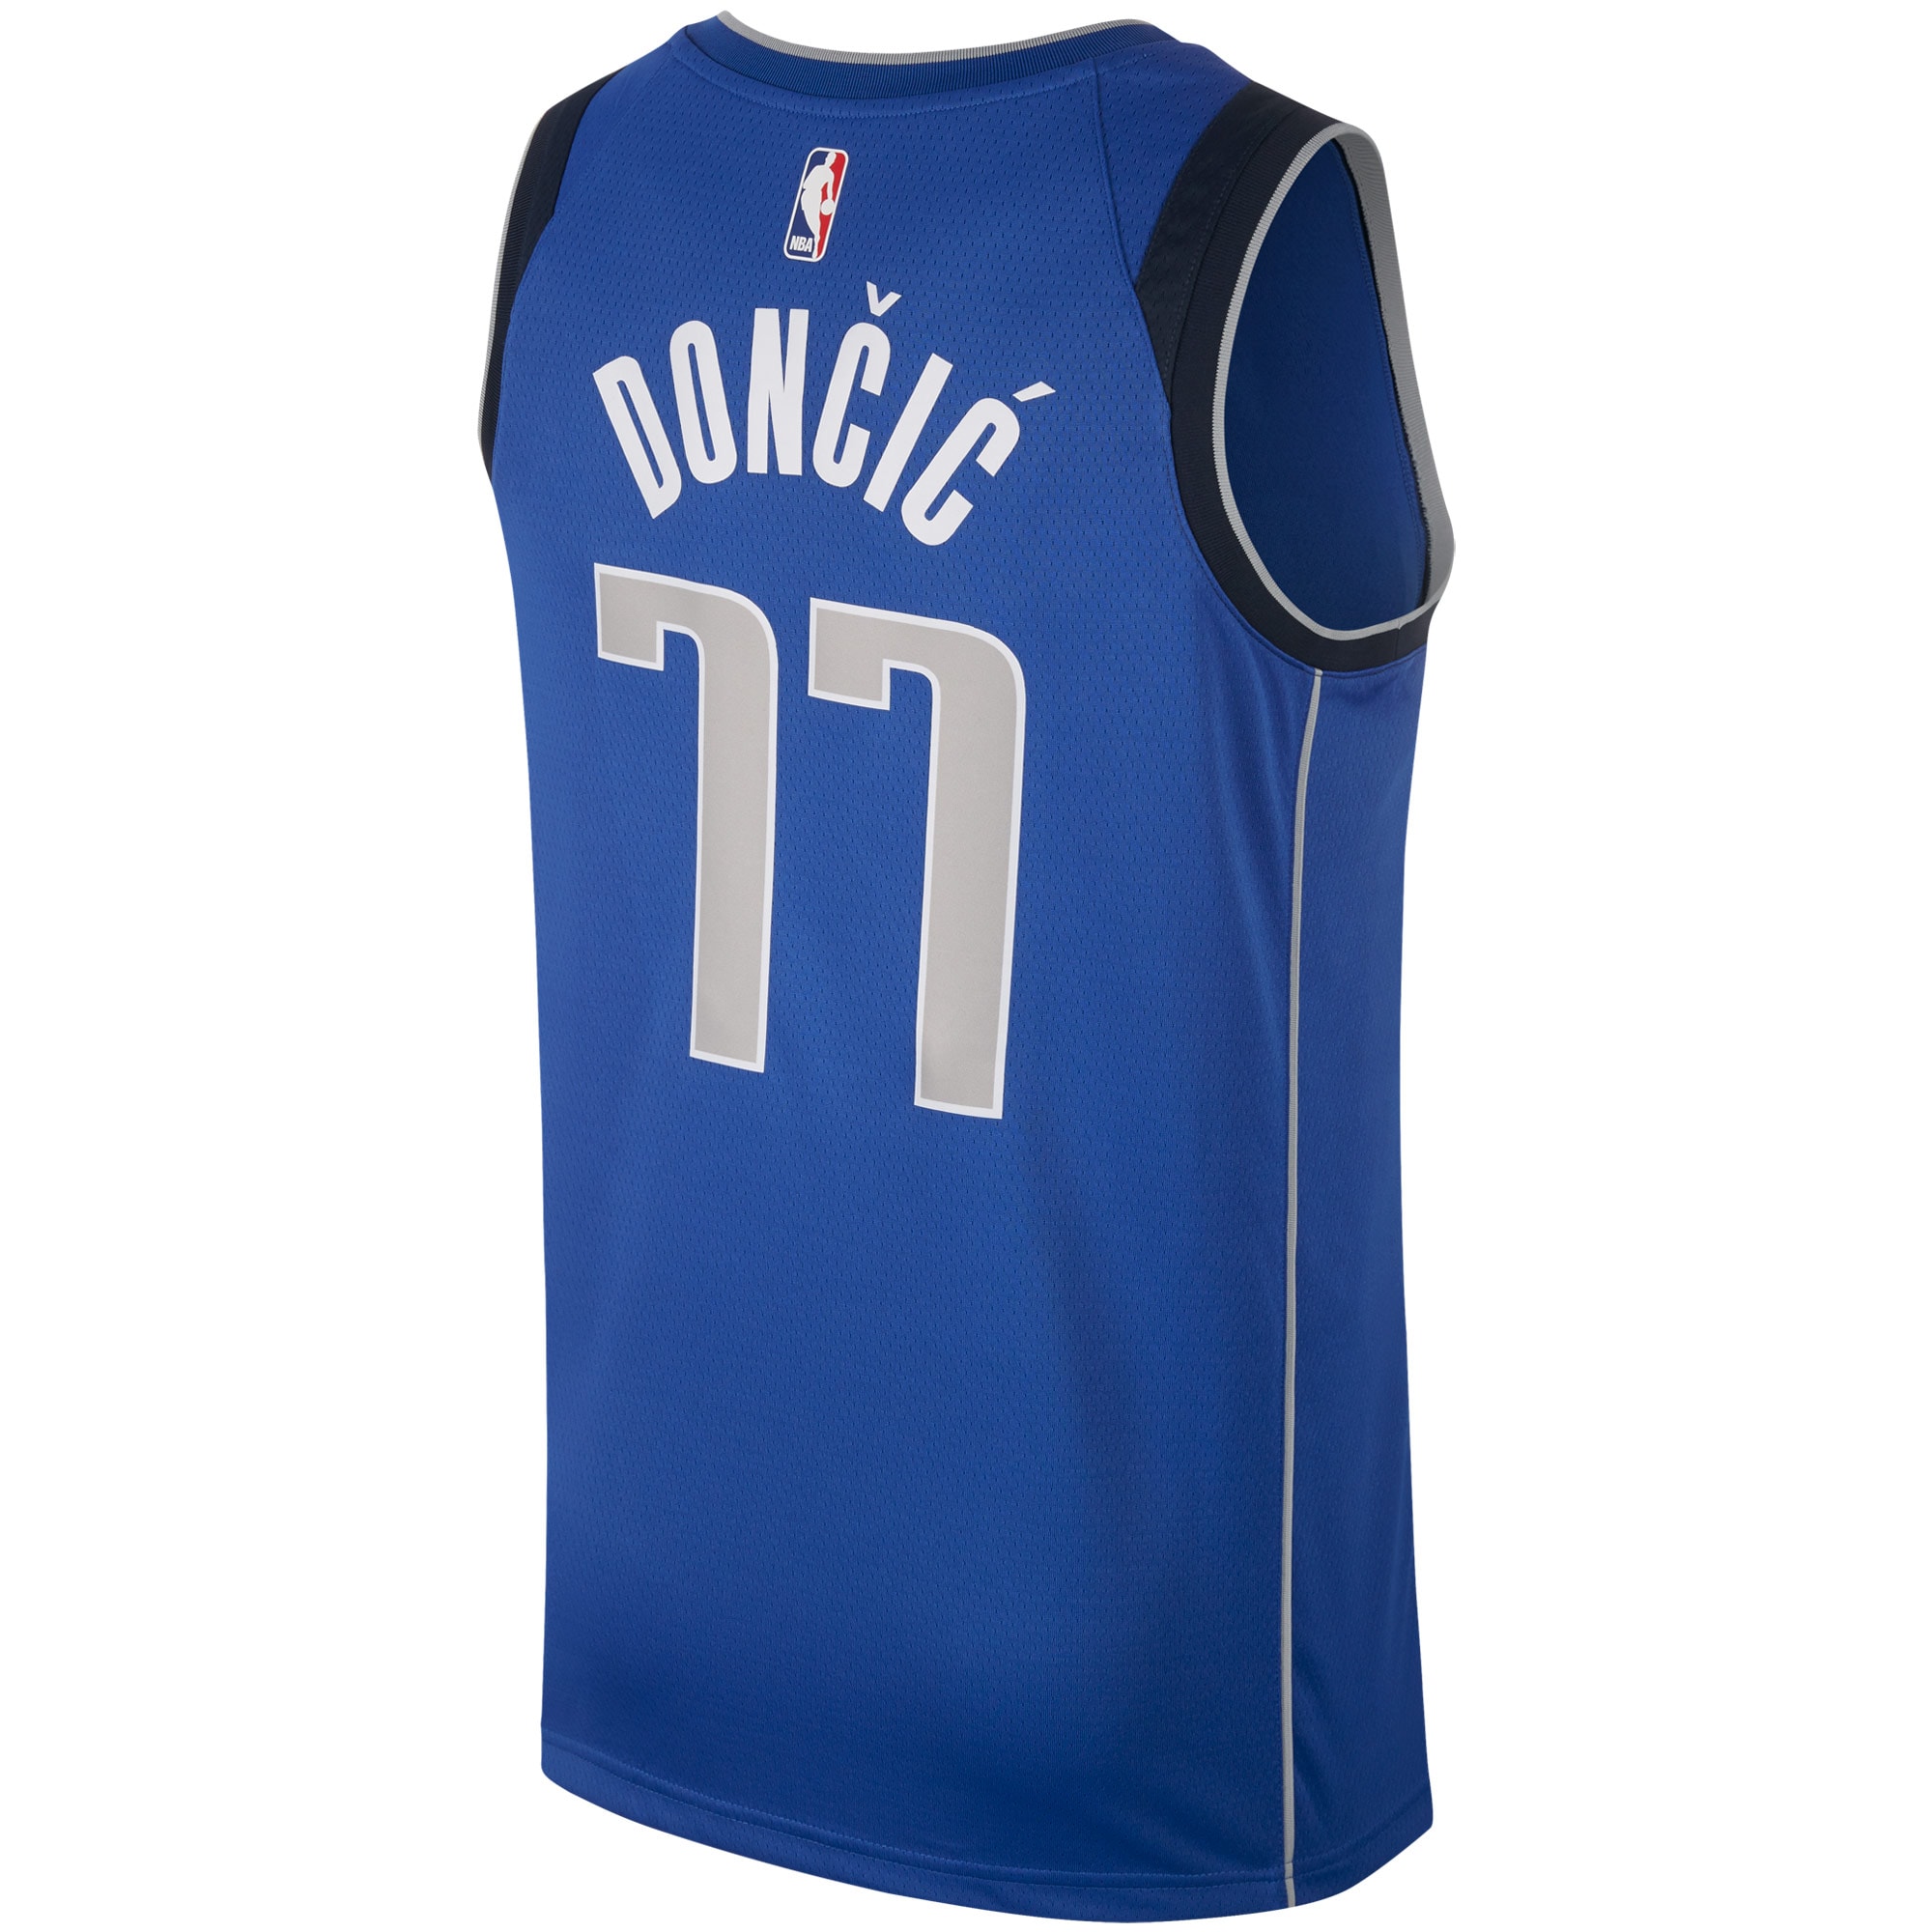 Men's Nike Luka Doncic Royal Dallas Mavericks Swingman Jersey - image 3 of 3